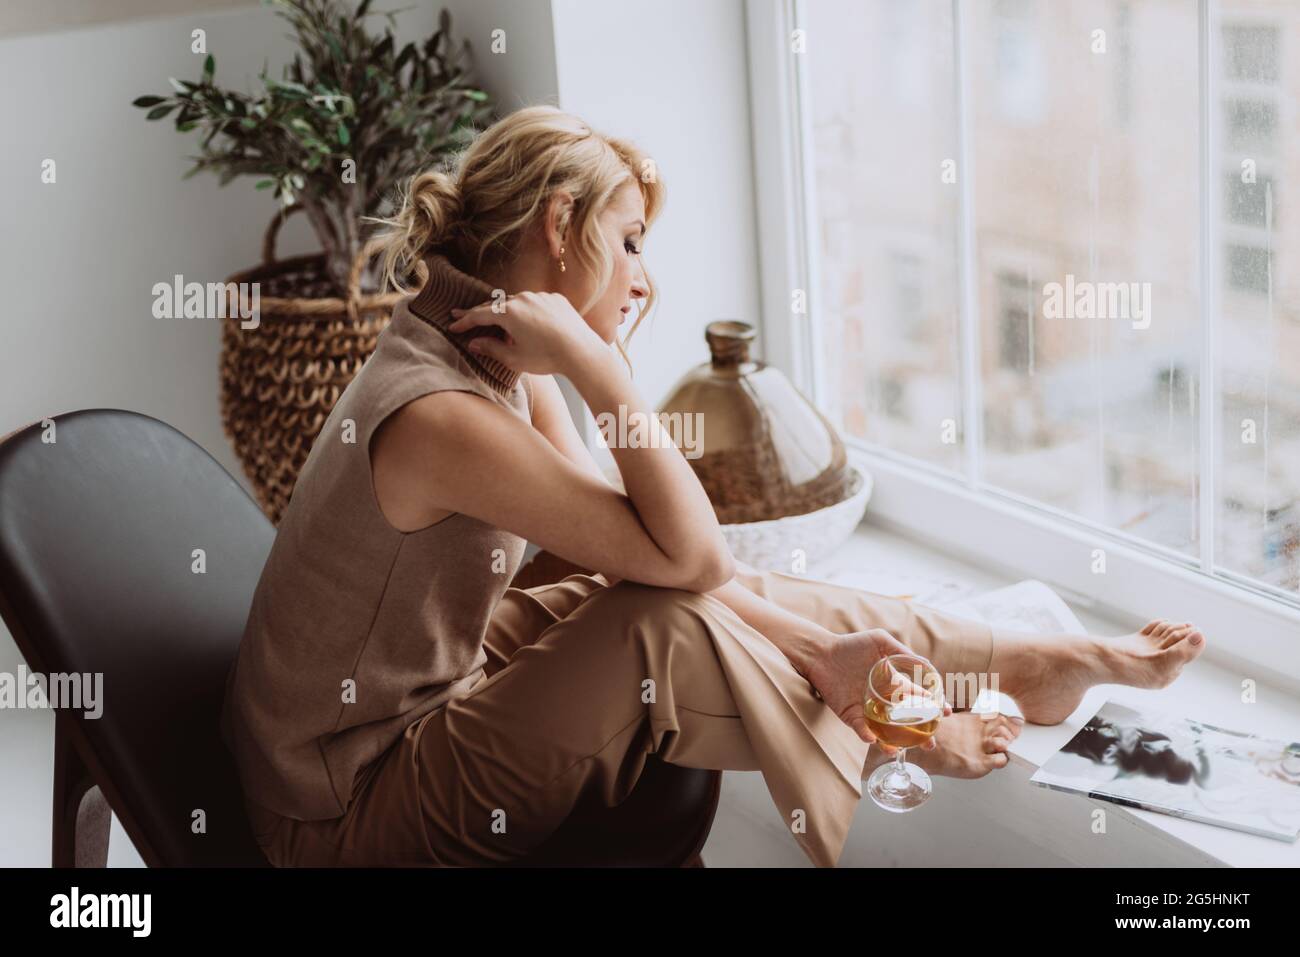 Das nachdenkliche, ruhige Modell hält ein Glas Weißwein und blickt aus dem Fenster. Schöne Frau in einem modernen Interieur. Weicher, selektiver Fokus. Stockfoto